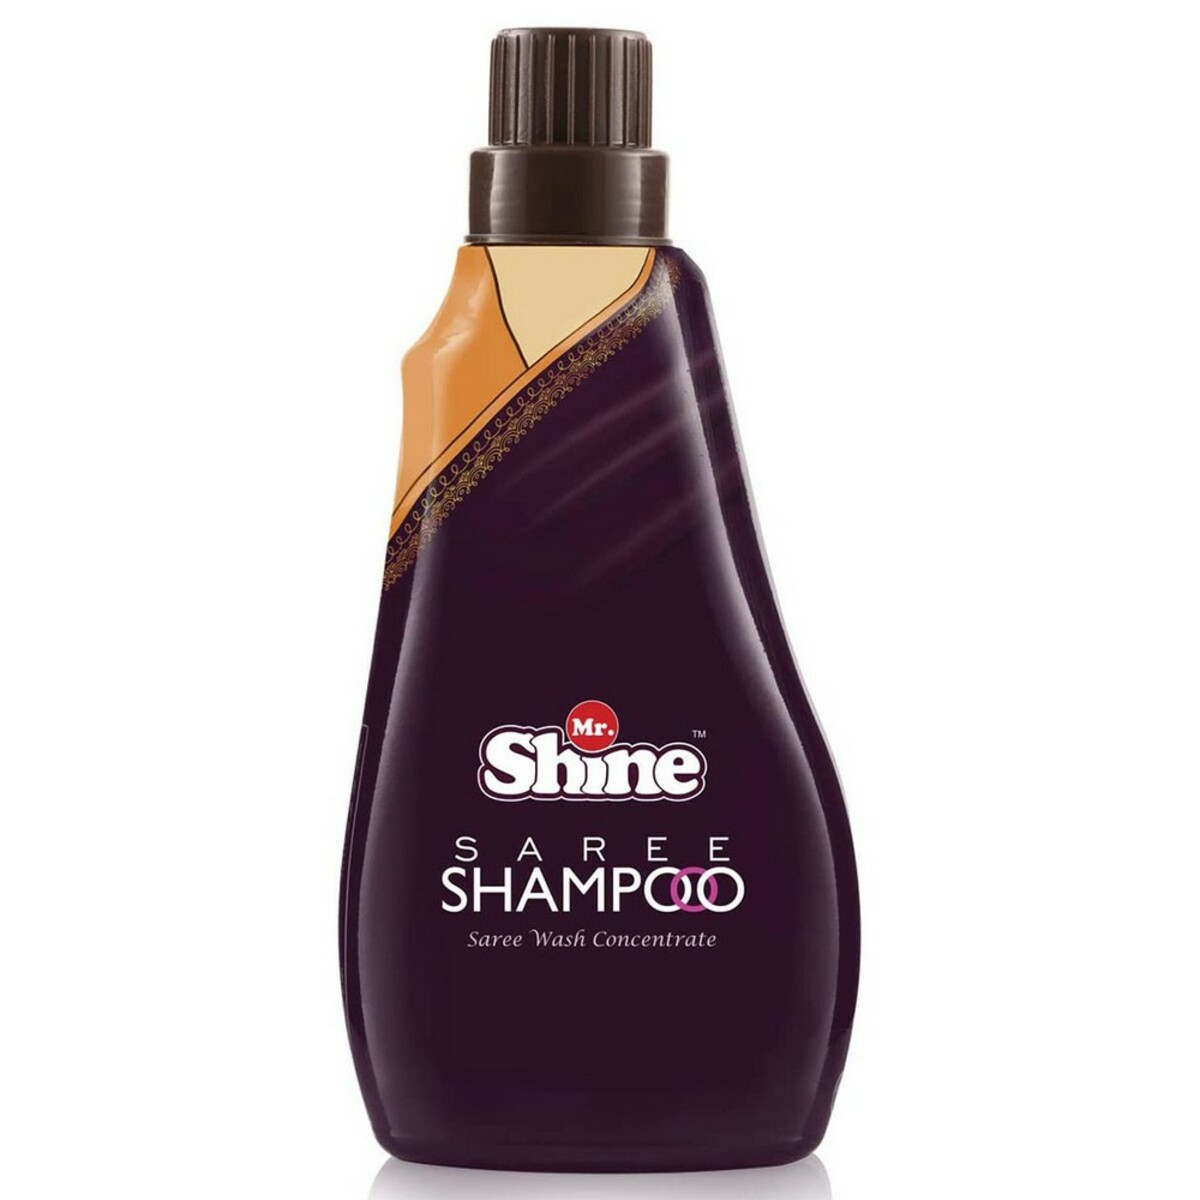 Mr Shine Saree Shampoo 500g